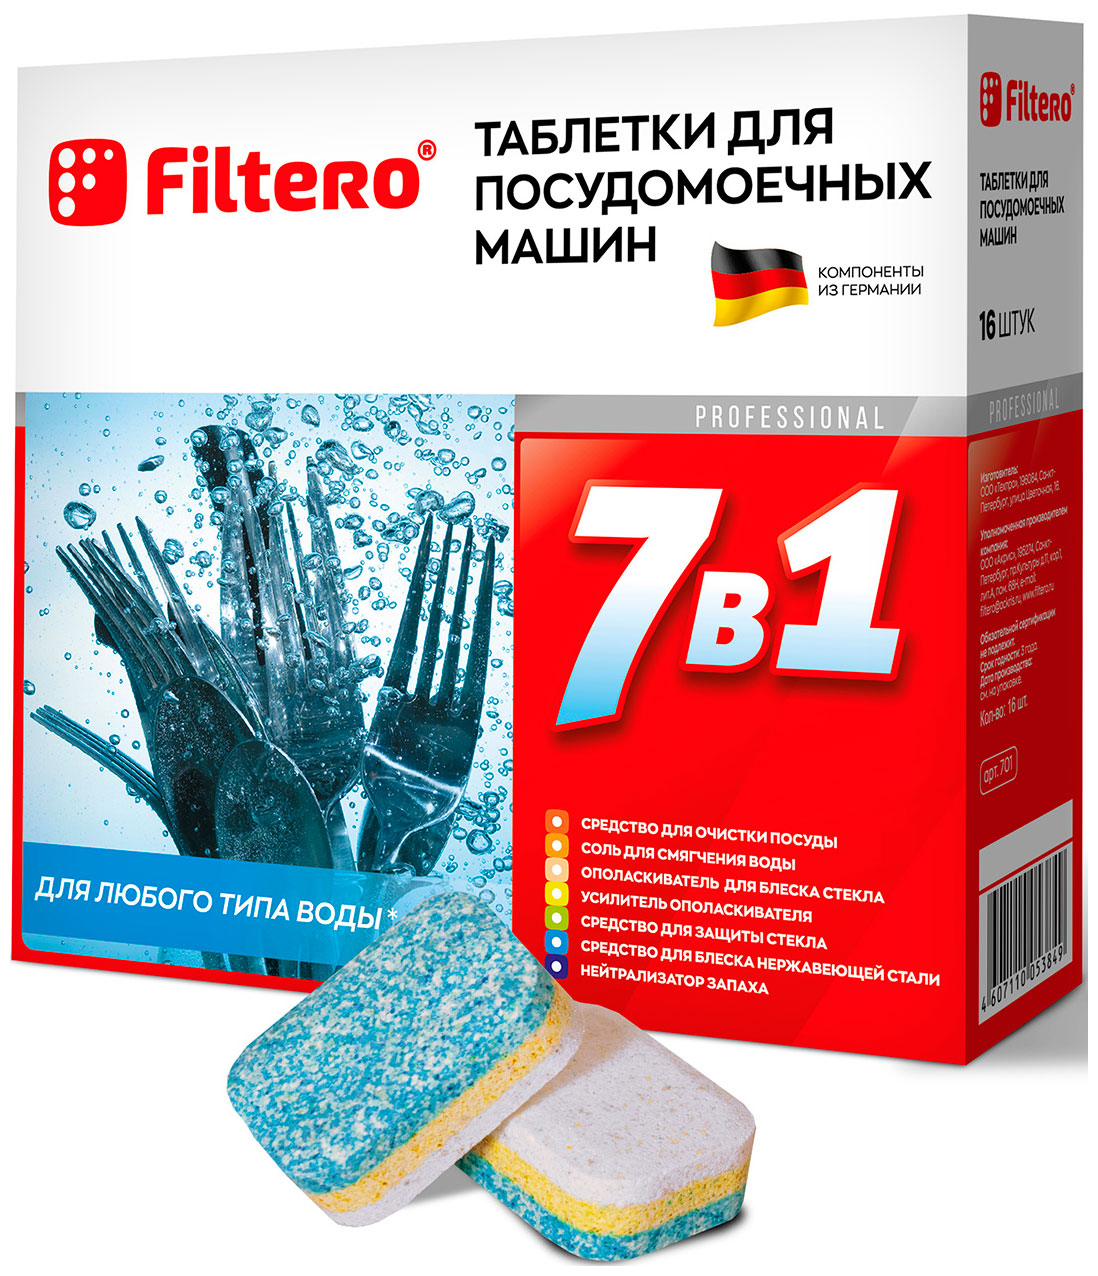 Таблетки для посудомоечных машин Filtero Filtero 7 в 1 таблетки для посудомоечной машины таблетки для посудомоечных машин filtero 707